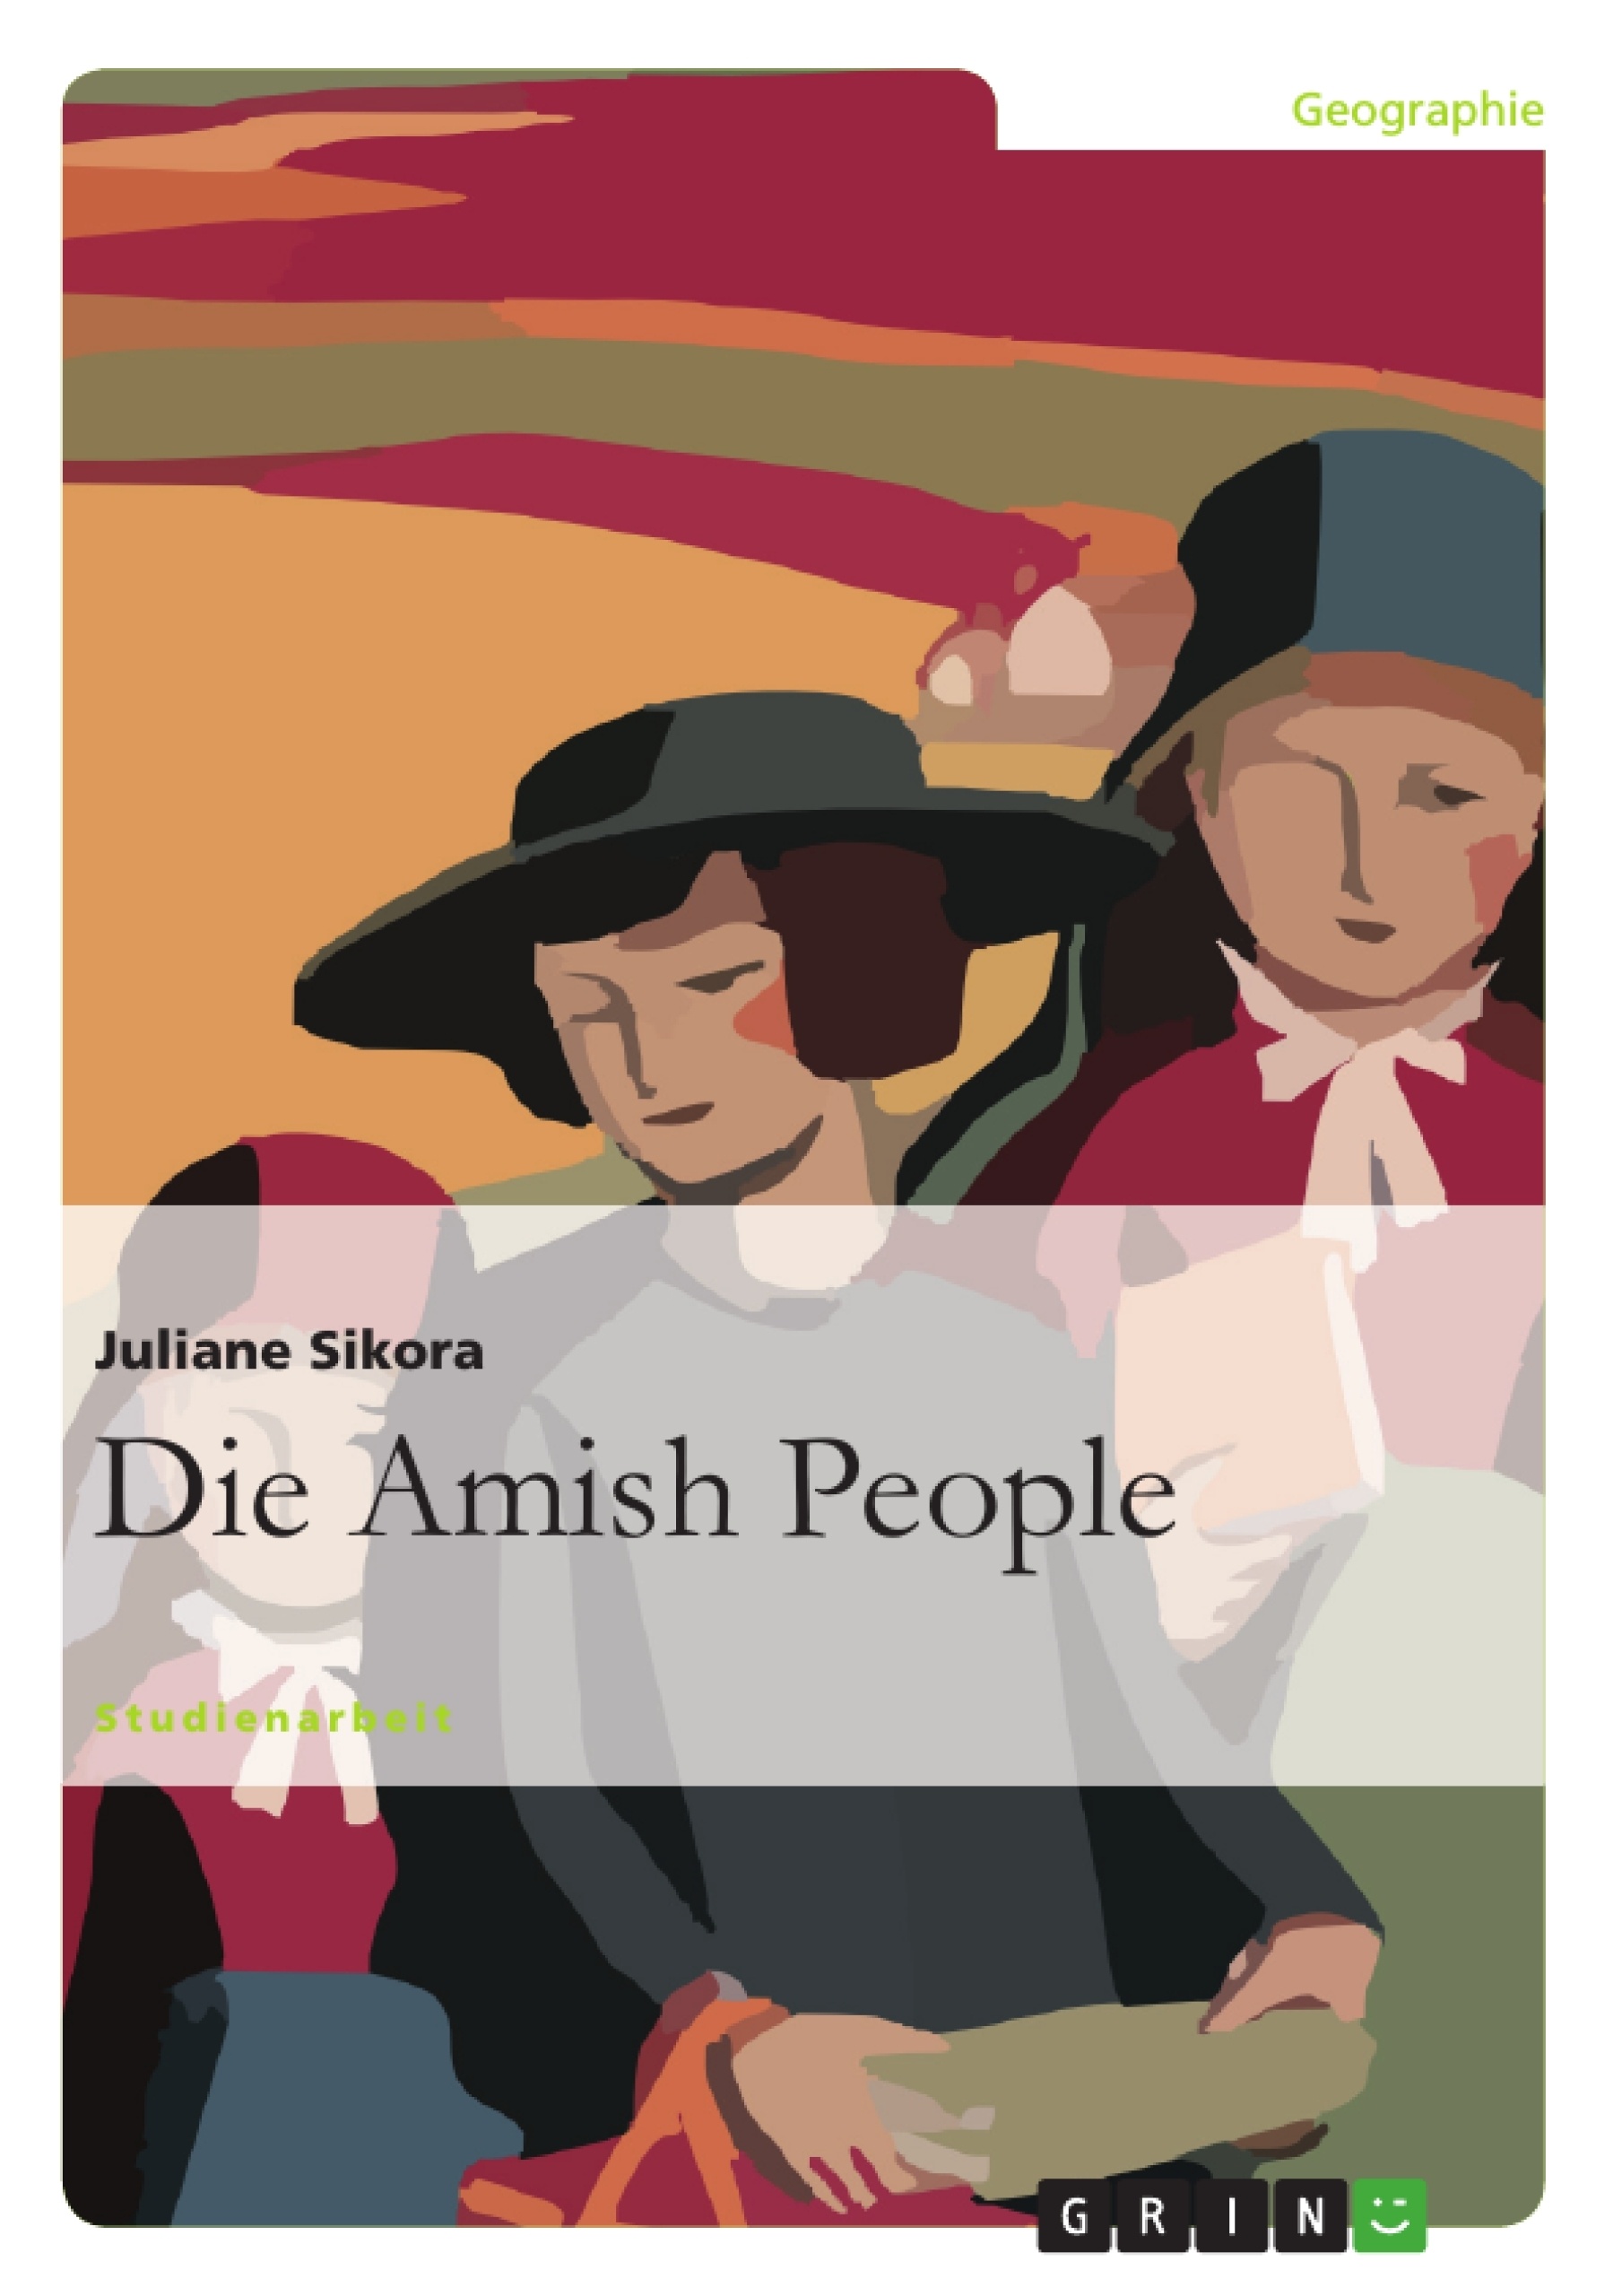 Título: Die Amish People